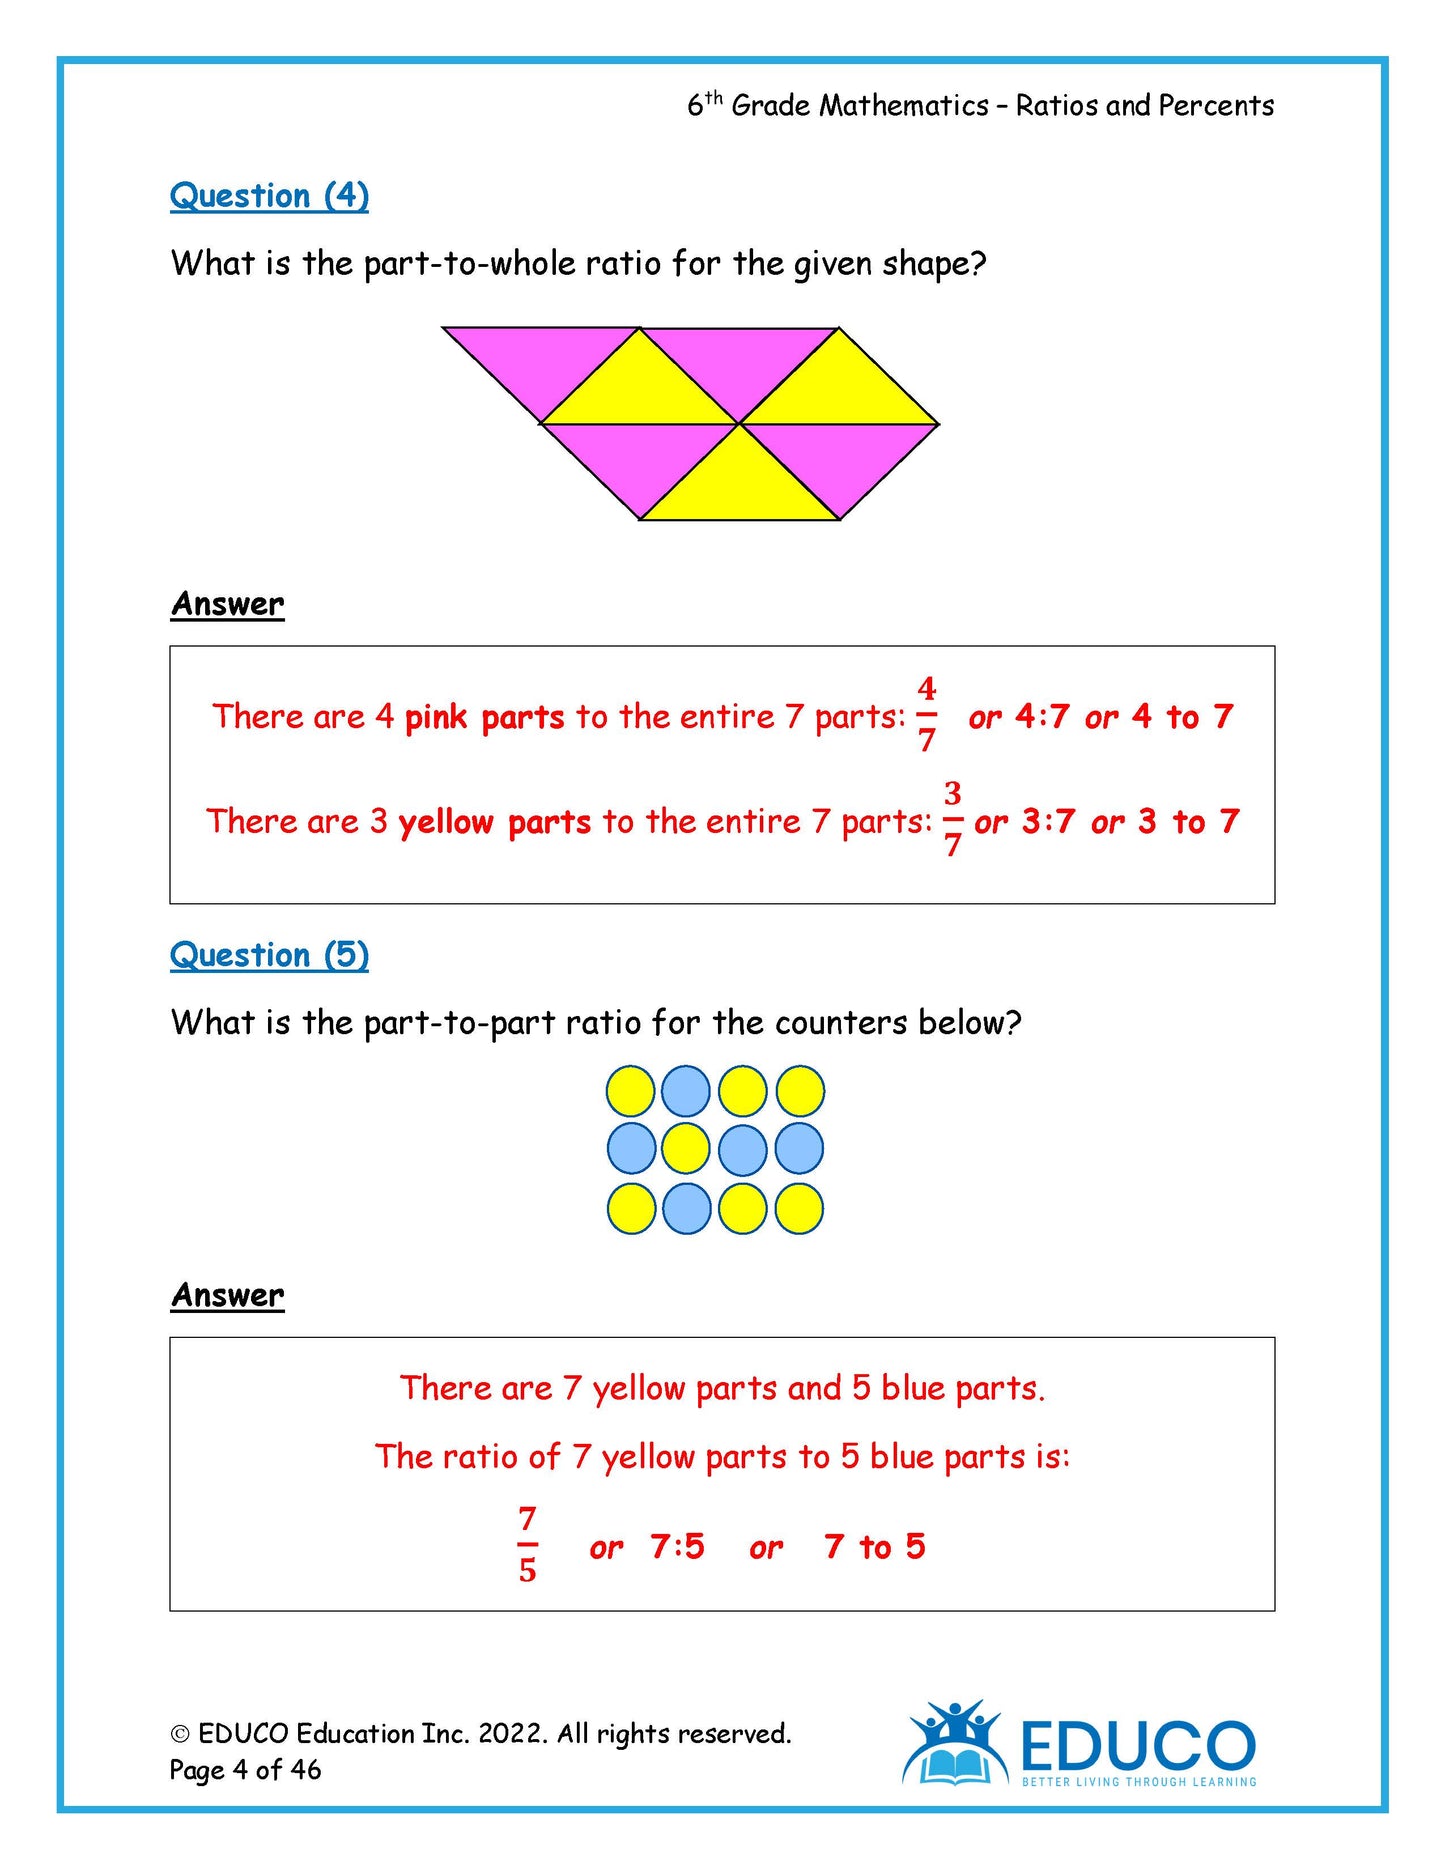 Unit 6: Ratio and Percent - Grade 6 Math (Digital Download)